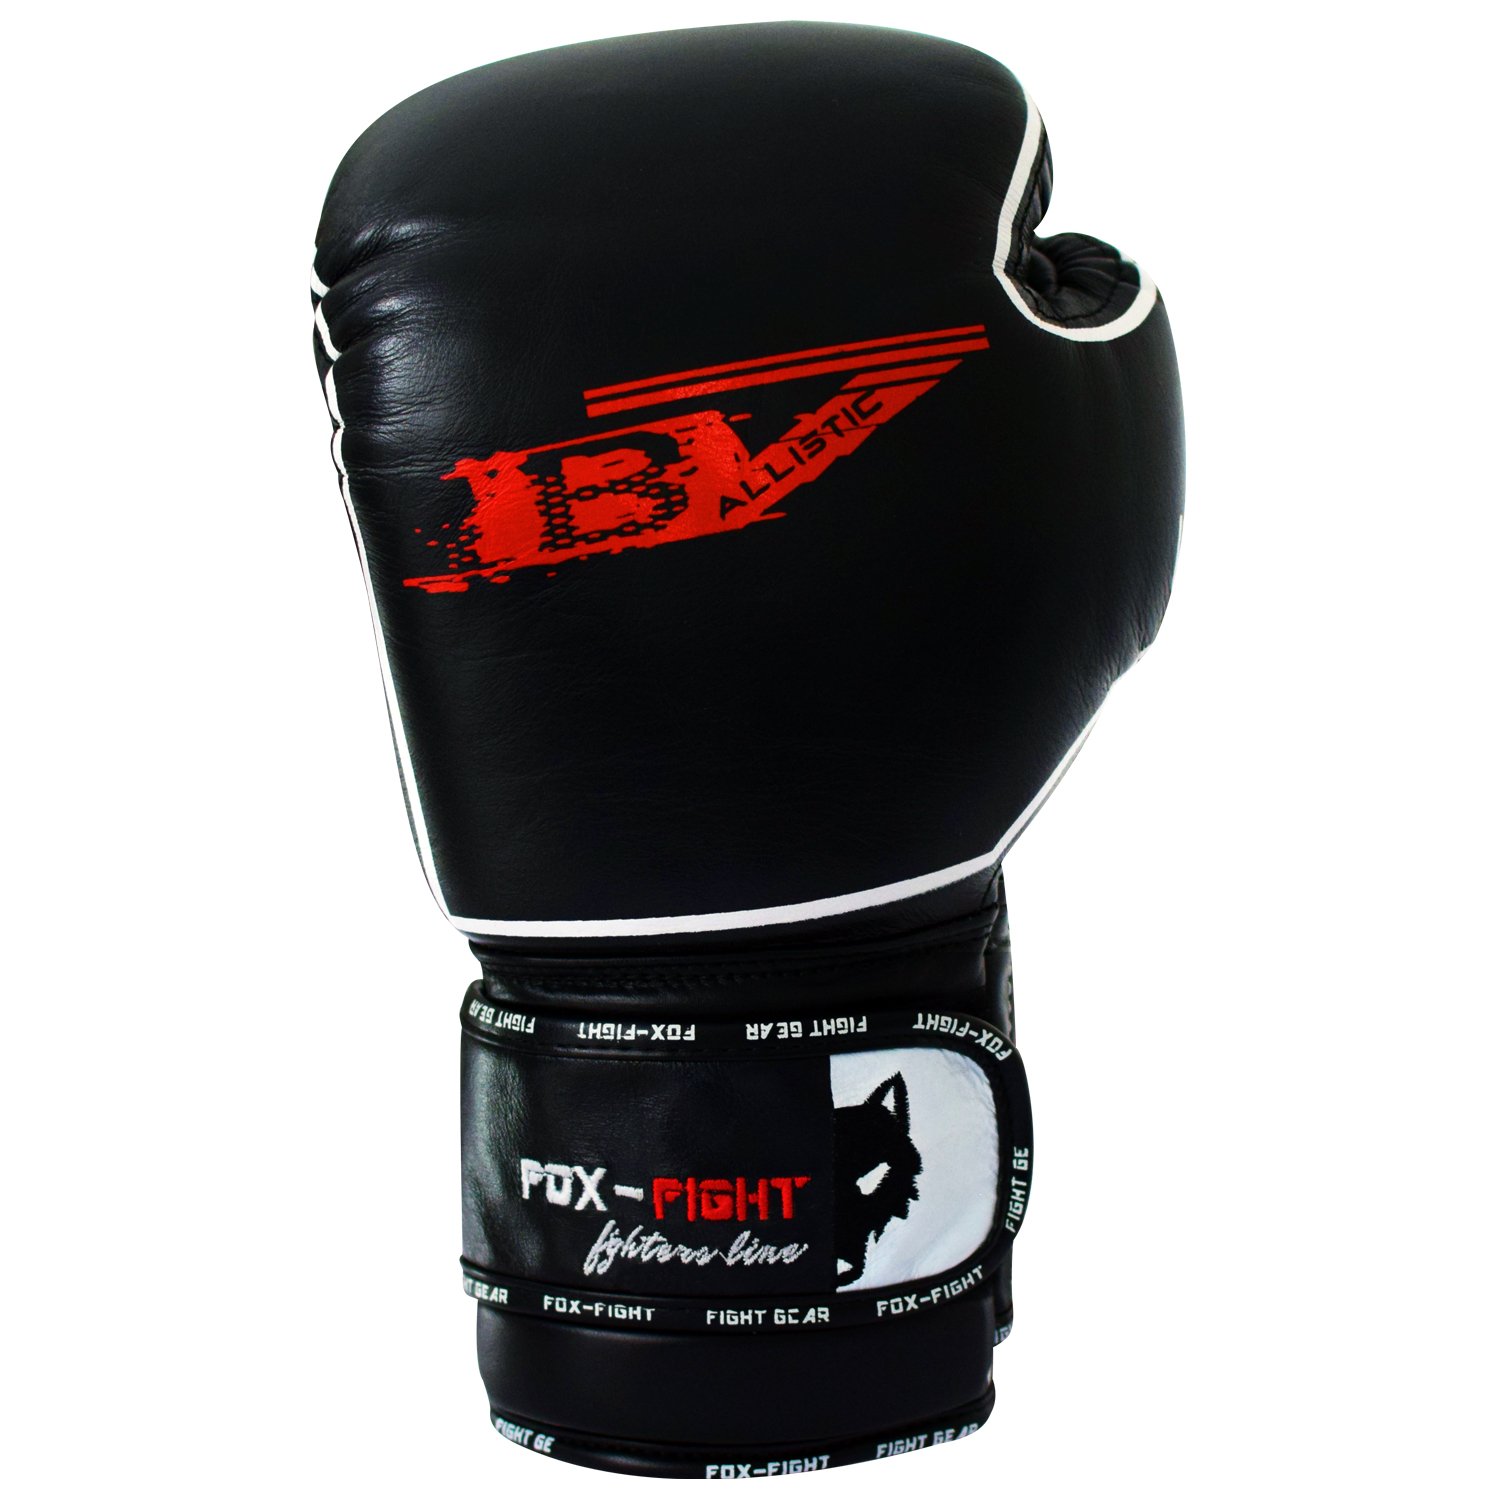 FOX-FIGHT B7 Boxhandschuhe professionelle hochwertige Premium Qualität aus echtem Leder Sandsack Training Sparring Muay Thai Kickbox Freefight Kampfsport BJJ Sandsackhandschuhe Gloves 10 OZ schwarz